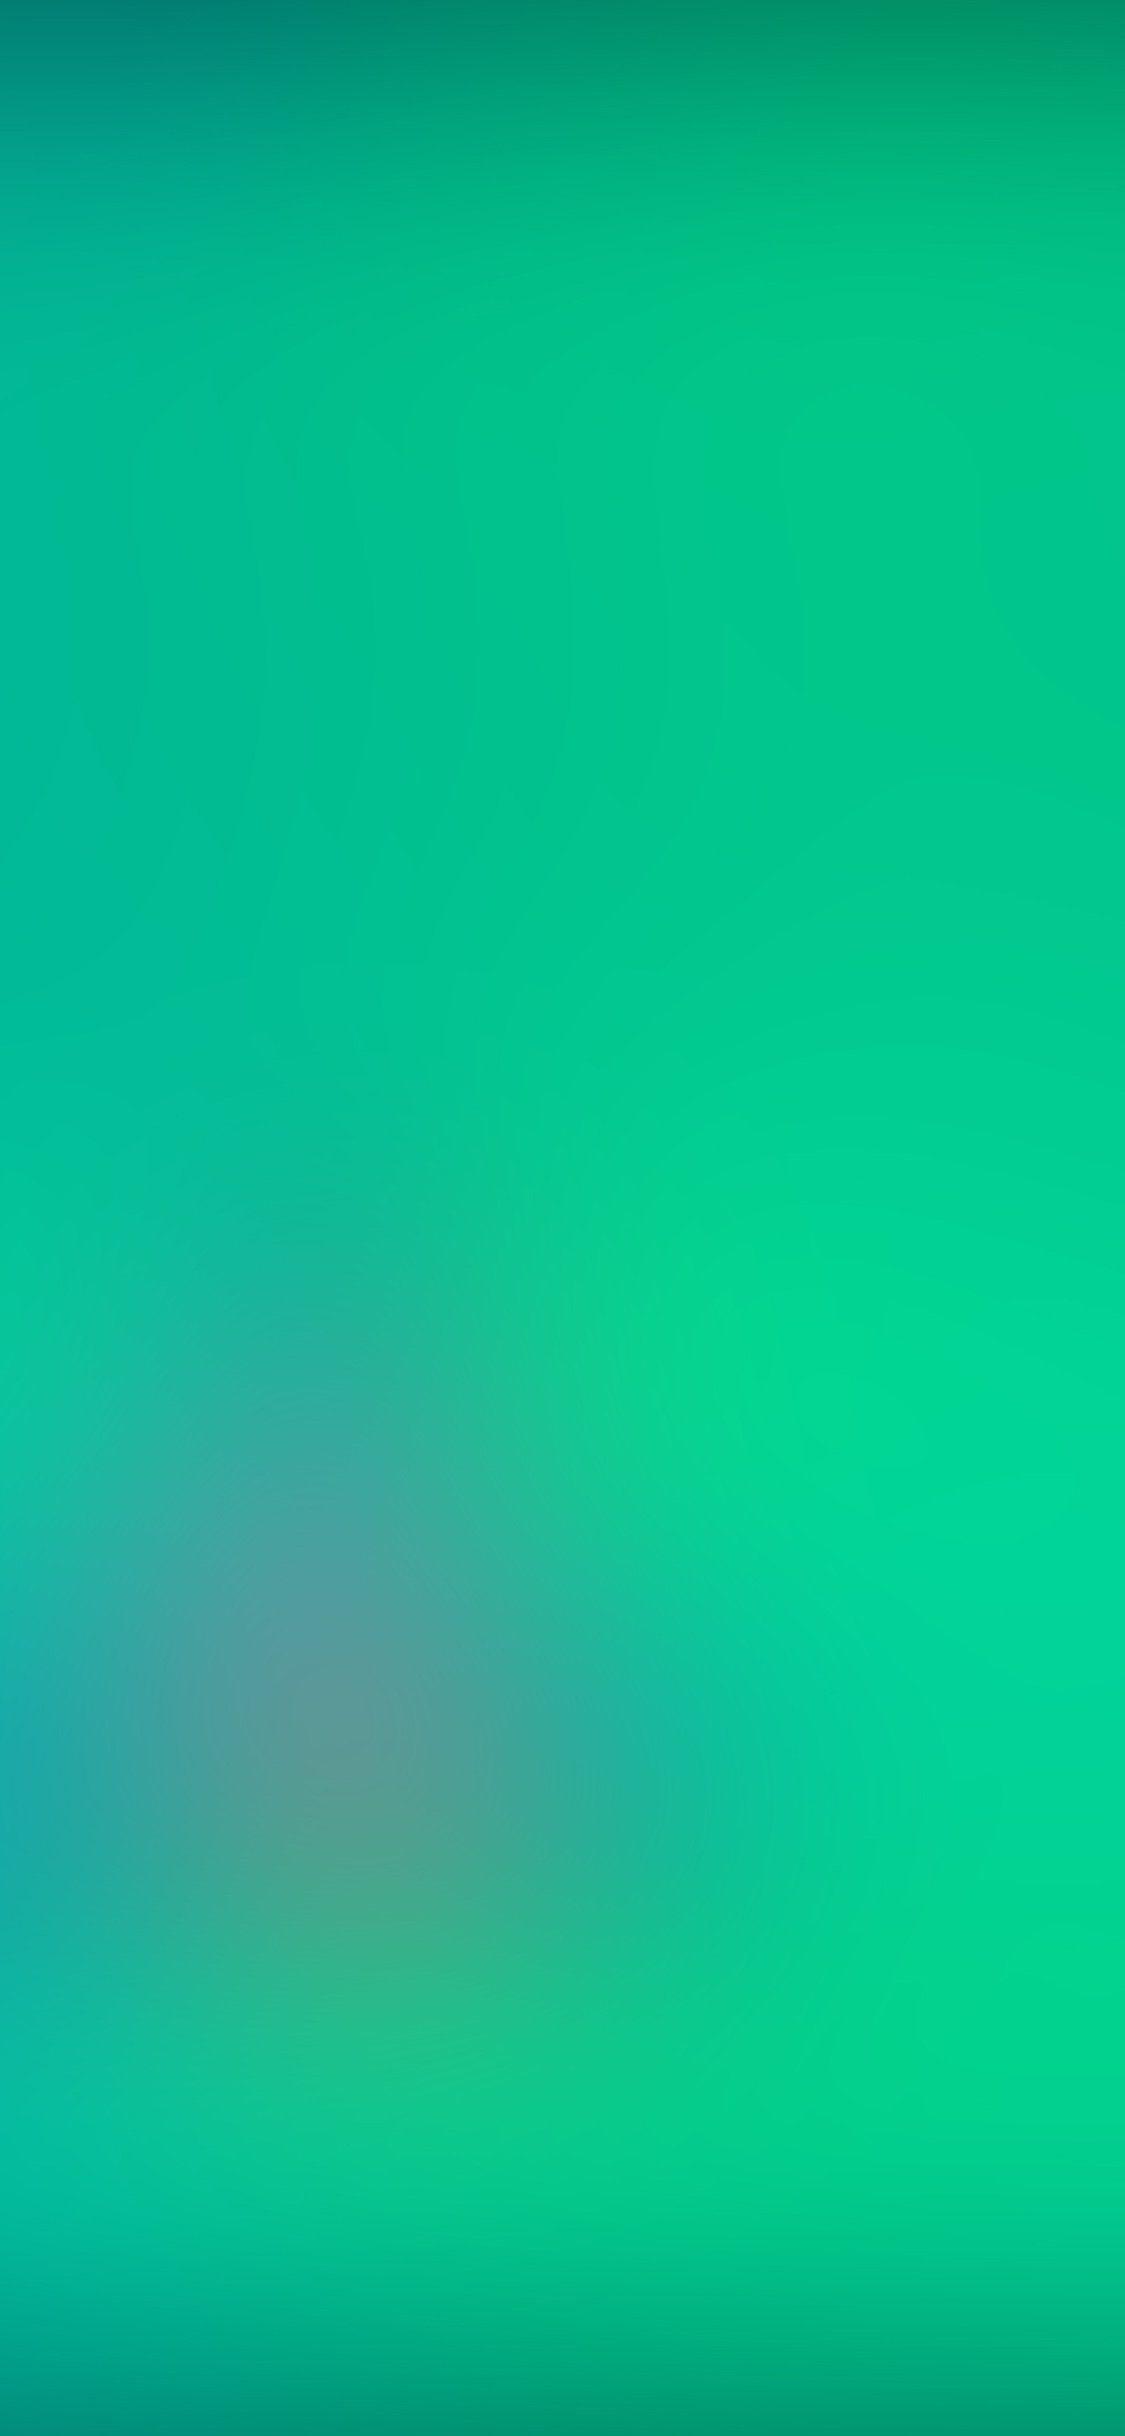 Iphone X Wallpaper Green